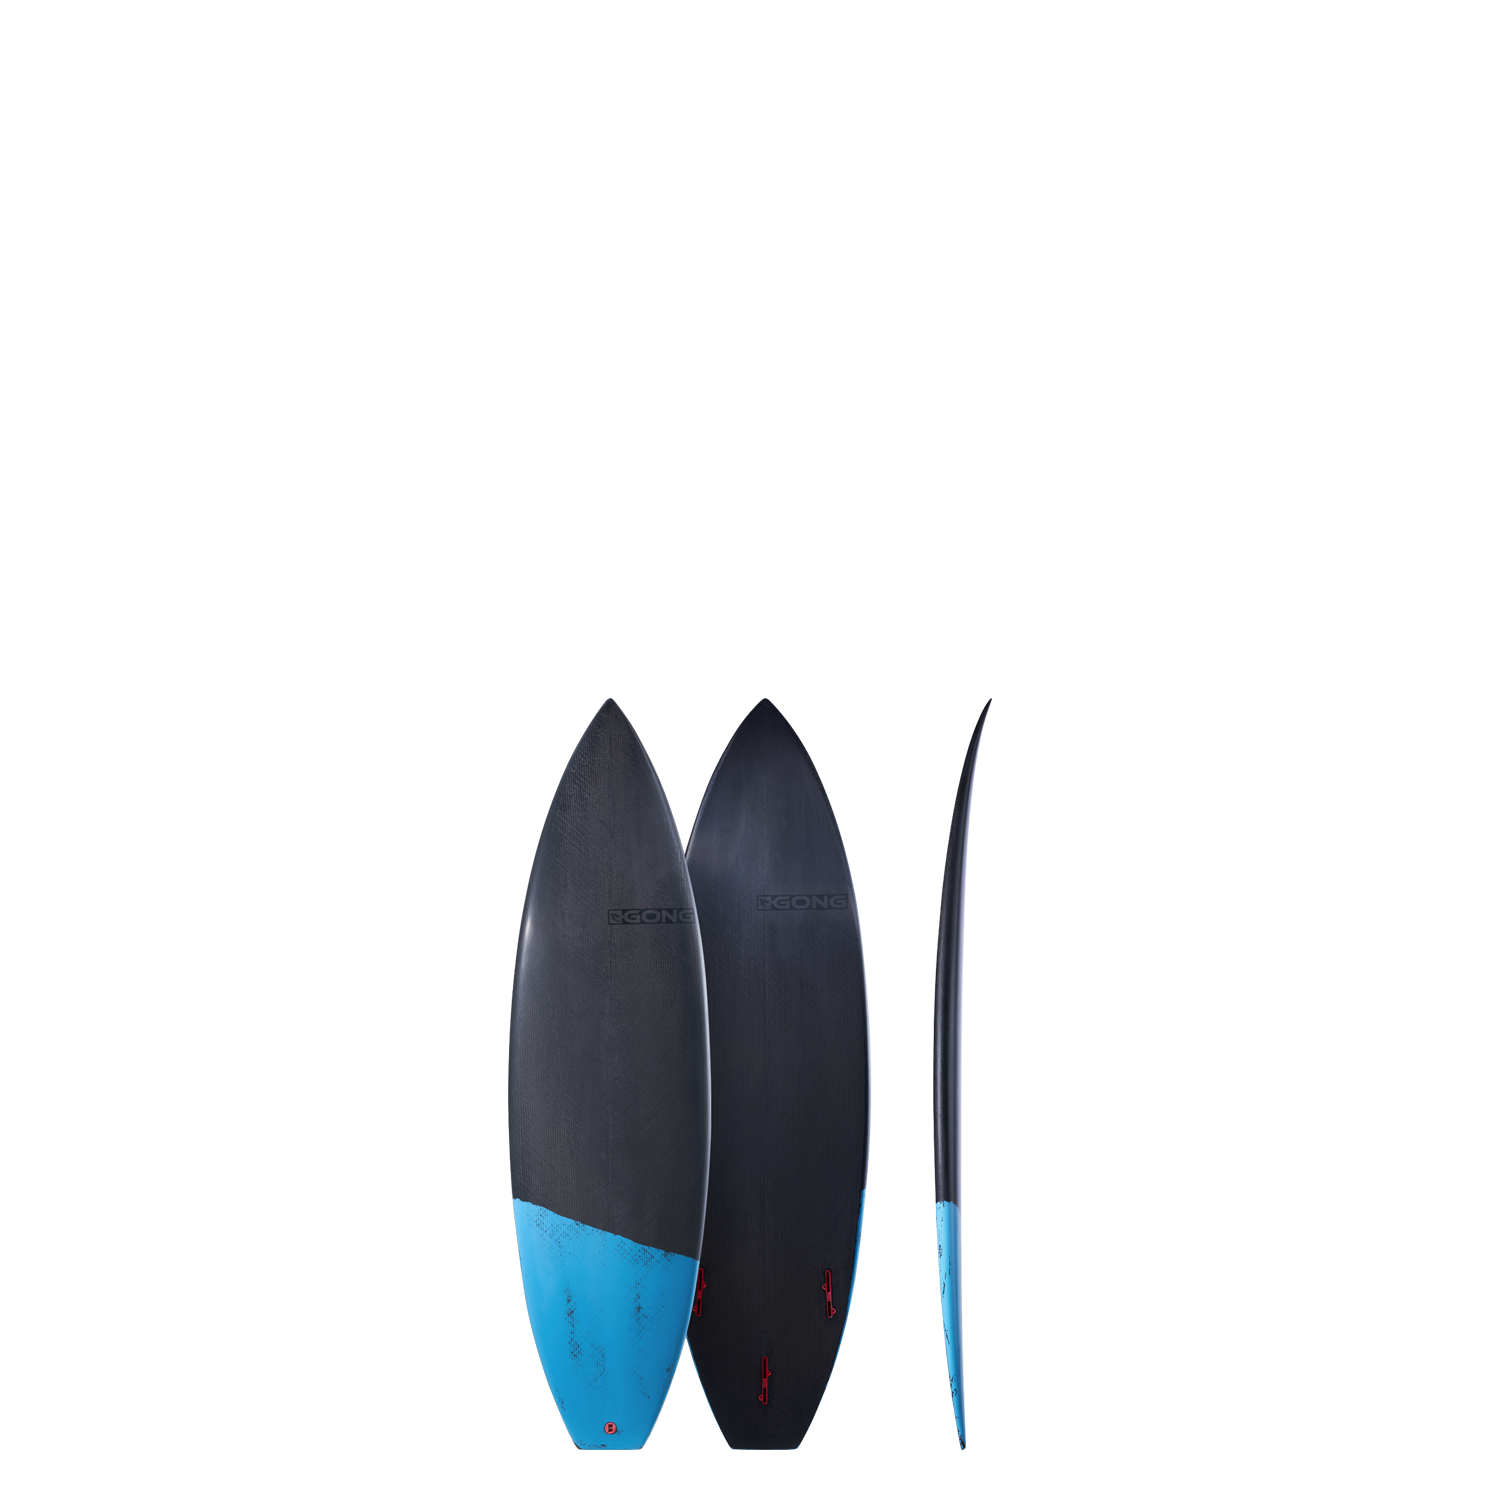 GONG | Factory Malo Surf 5'7 Evolt EPS